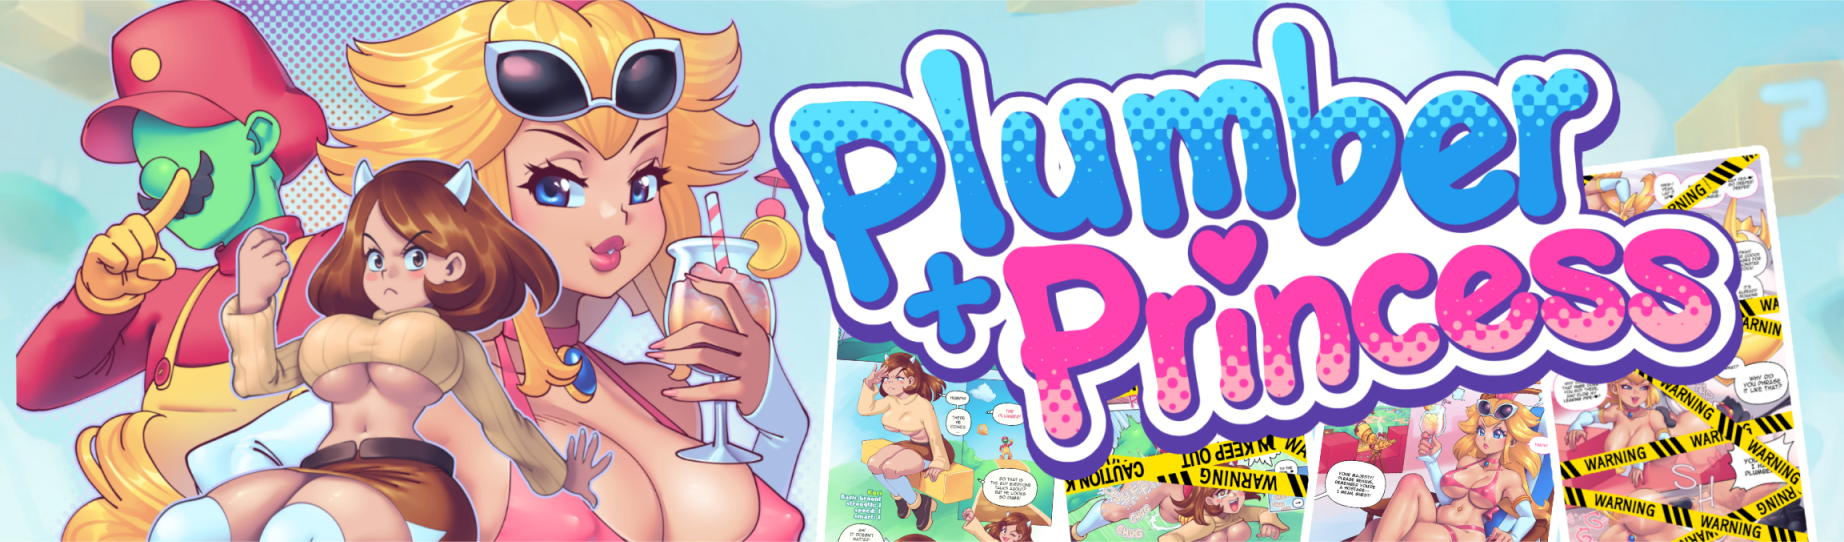 Plumber + Princess 01